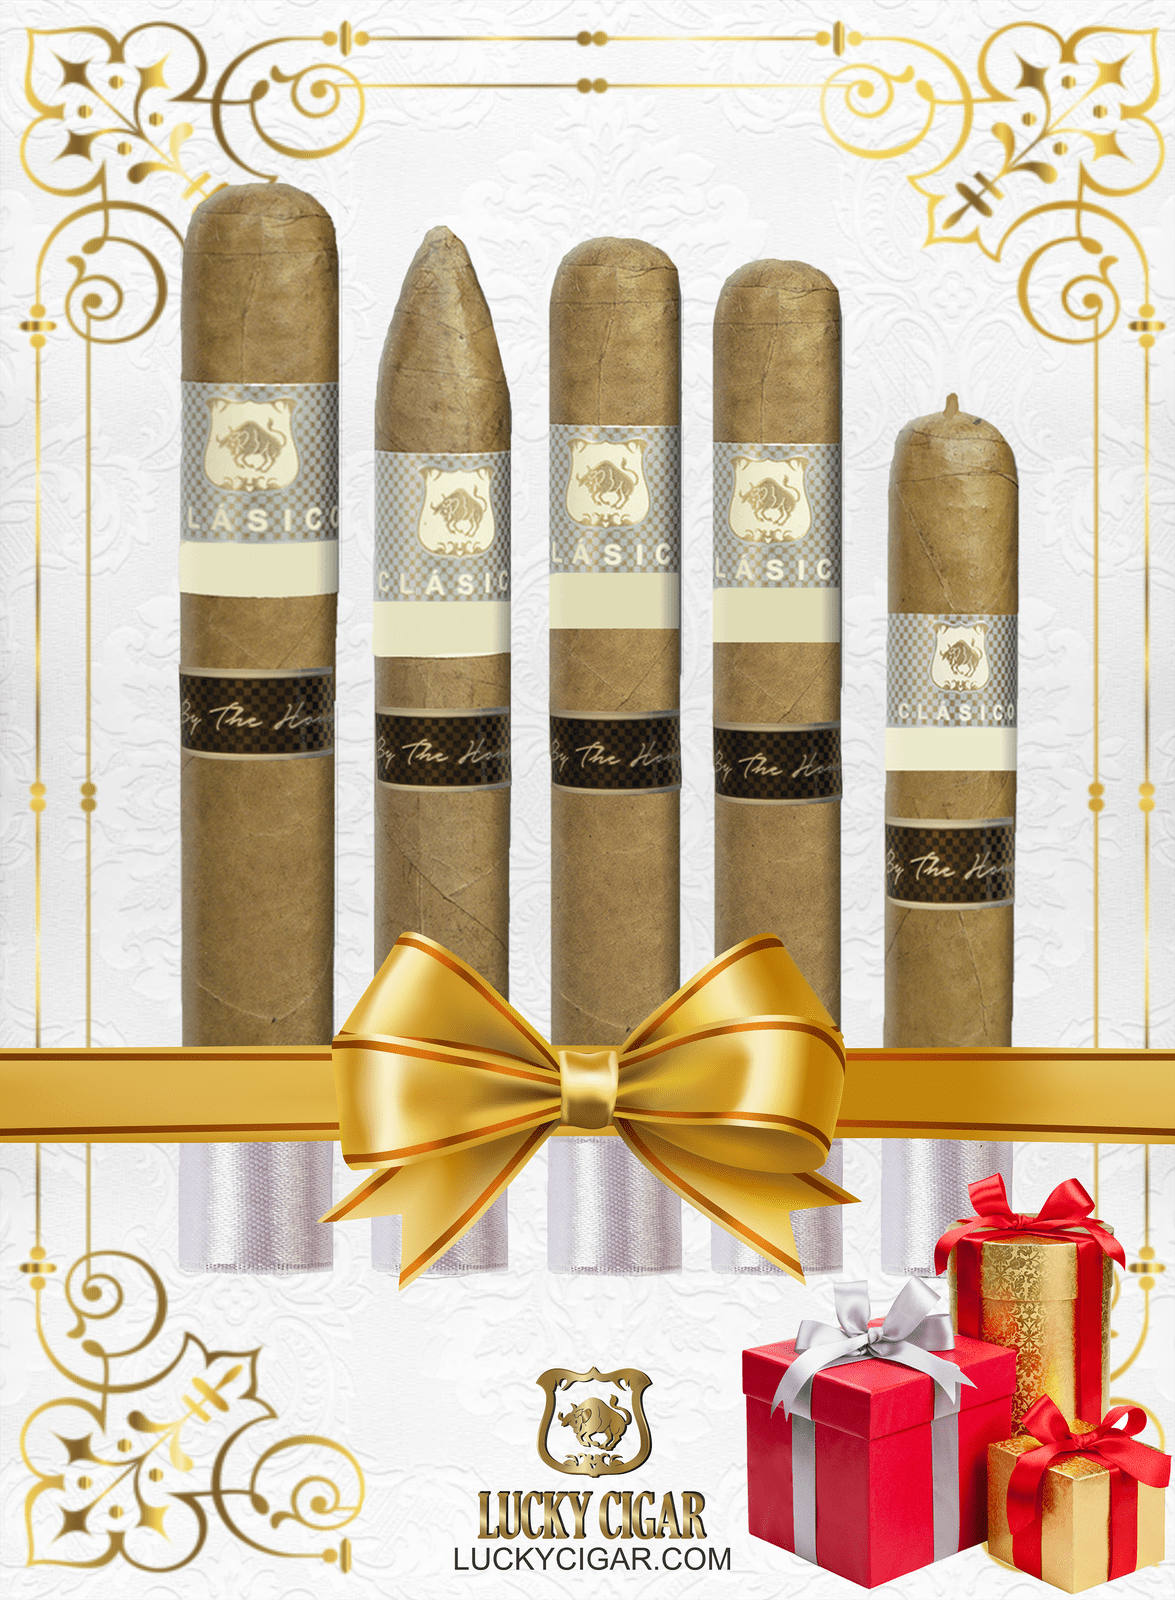 Classic Cigars - Classico by Lucky Cigar: Set of 5 Cigars, Robusto, Torpedo, Gordo, Super Gordo, Rotchilde